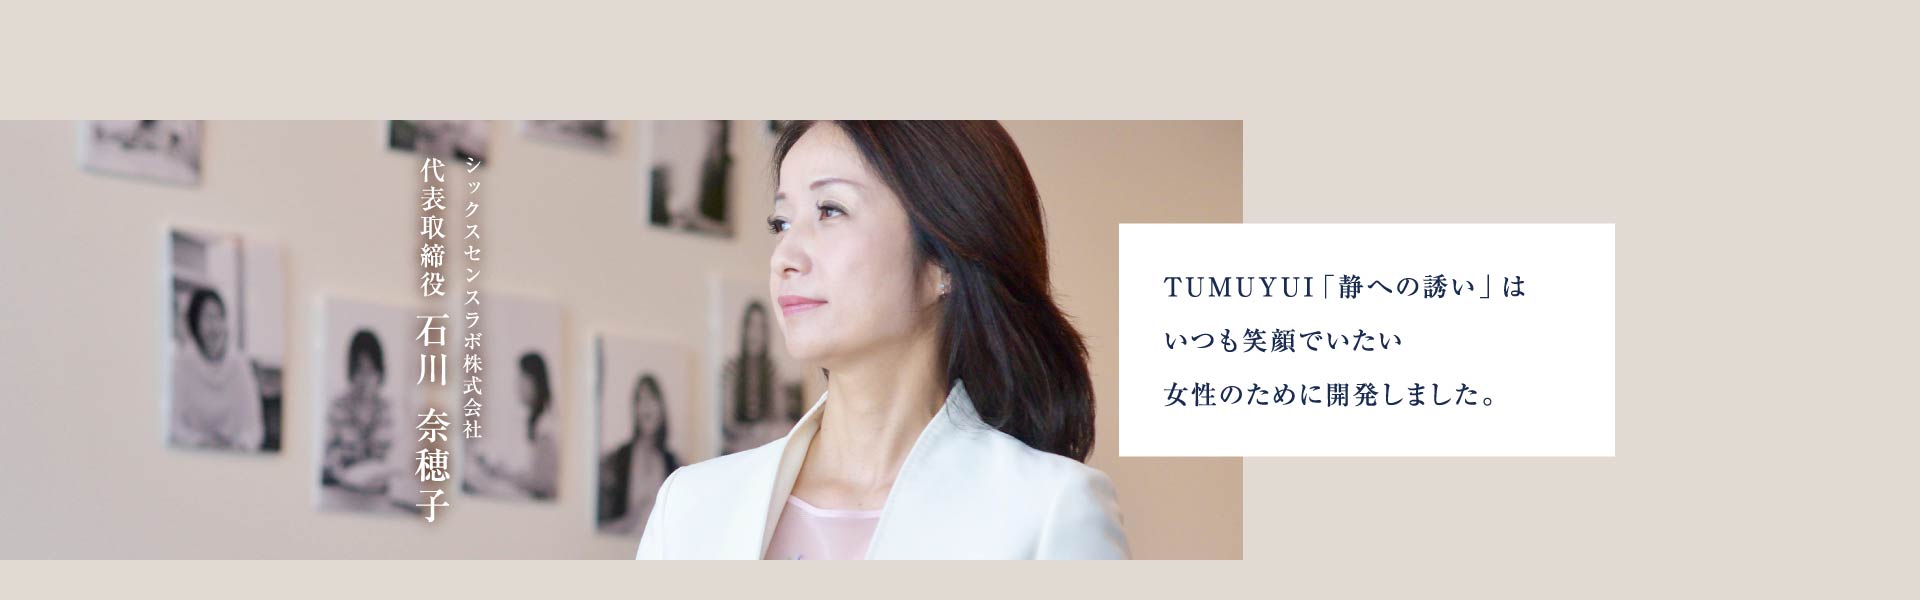 シックスセンスラボ株式会社 代表取締役 石川奈穂子 頑張っている女性たちが、少しでも笑顔で毎日を乗り越えていけるようにこの商品を開発しました。